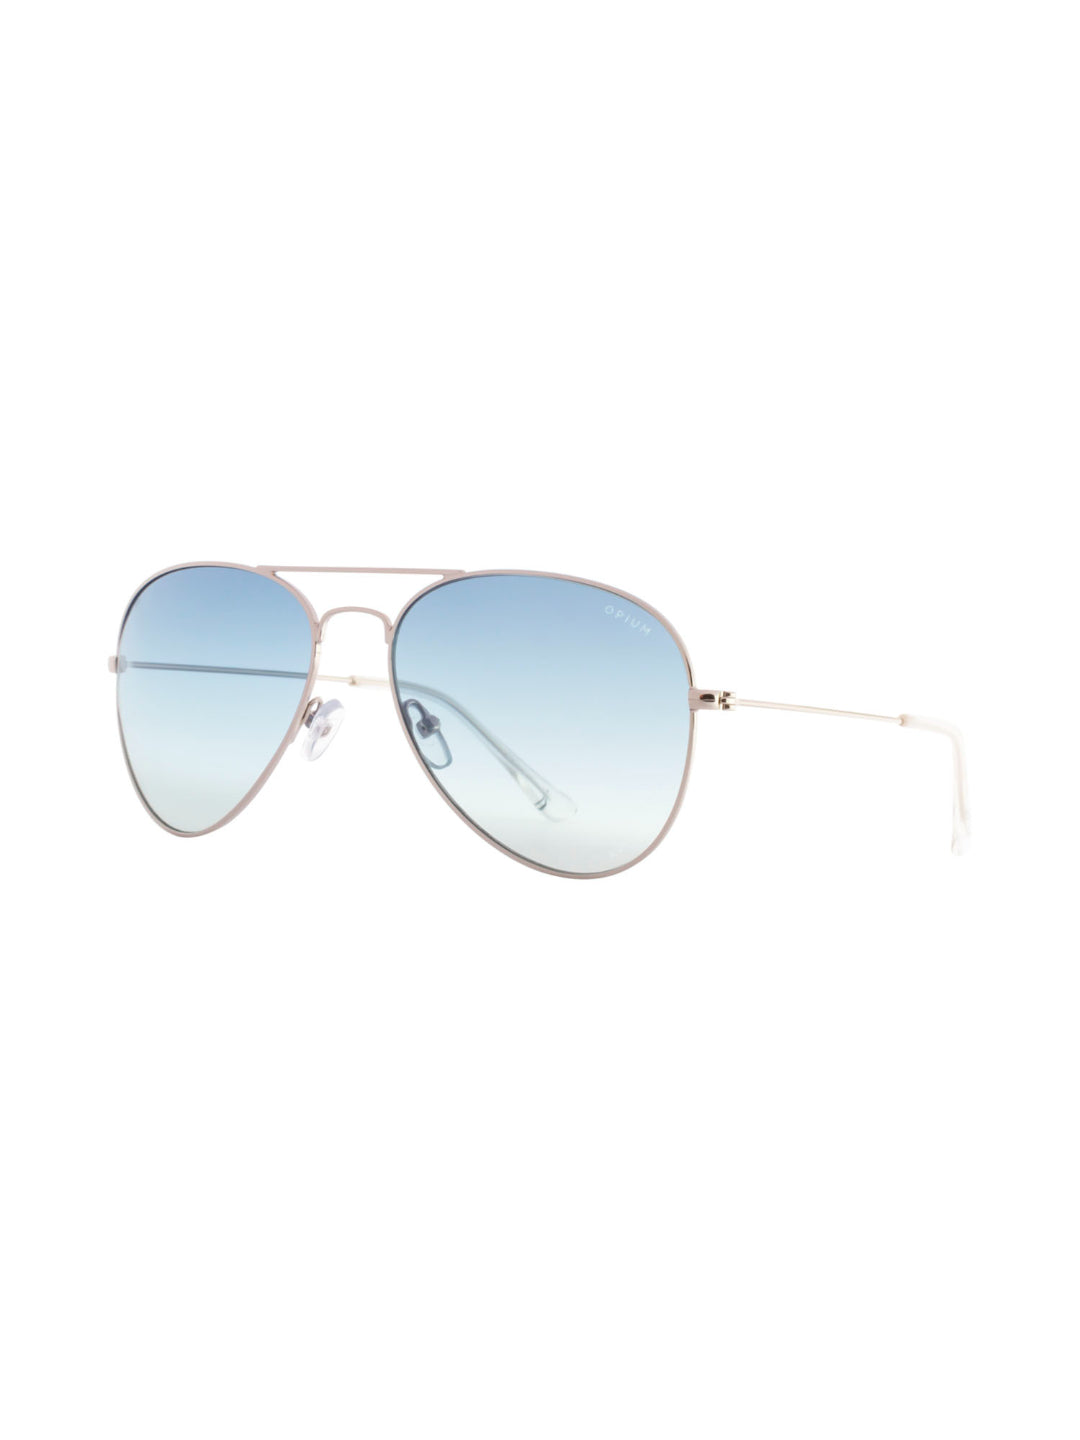 Silver Sunglasses - Selling Fast at Pantaloons.com